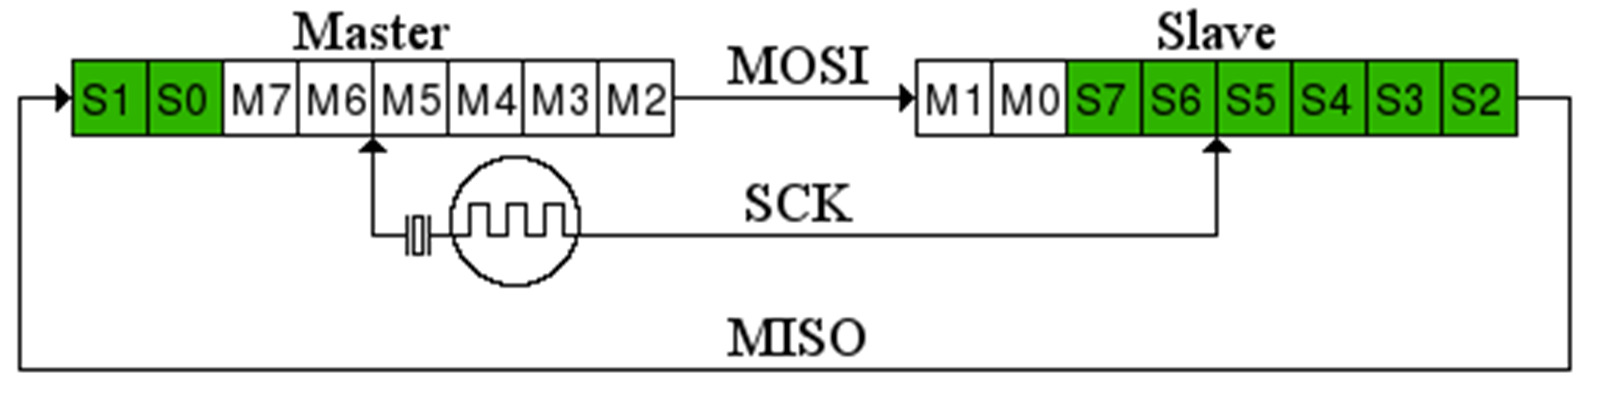 21 missä I²C-väylä vaatii aloitusbitin, kohdeosoitteen, ACK-bitin, datan ja niin edelleen, perustuu SPI väylä kahden laitteen kahdeksanbittisiin siirtorekistereihin, jotka synkronoidaan samalla